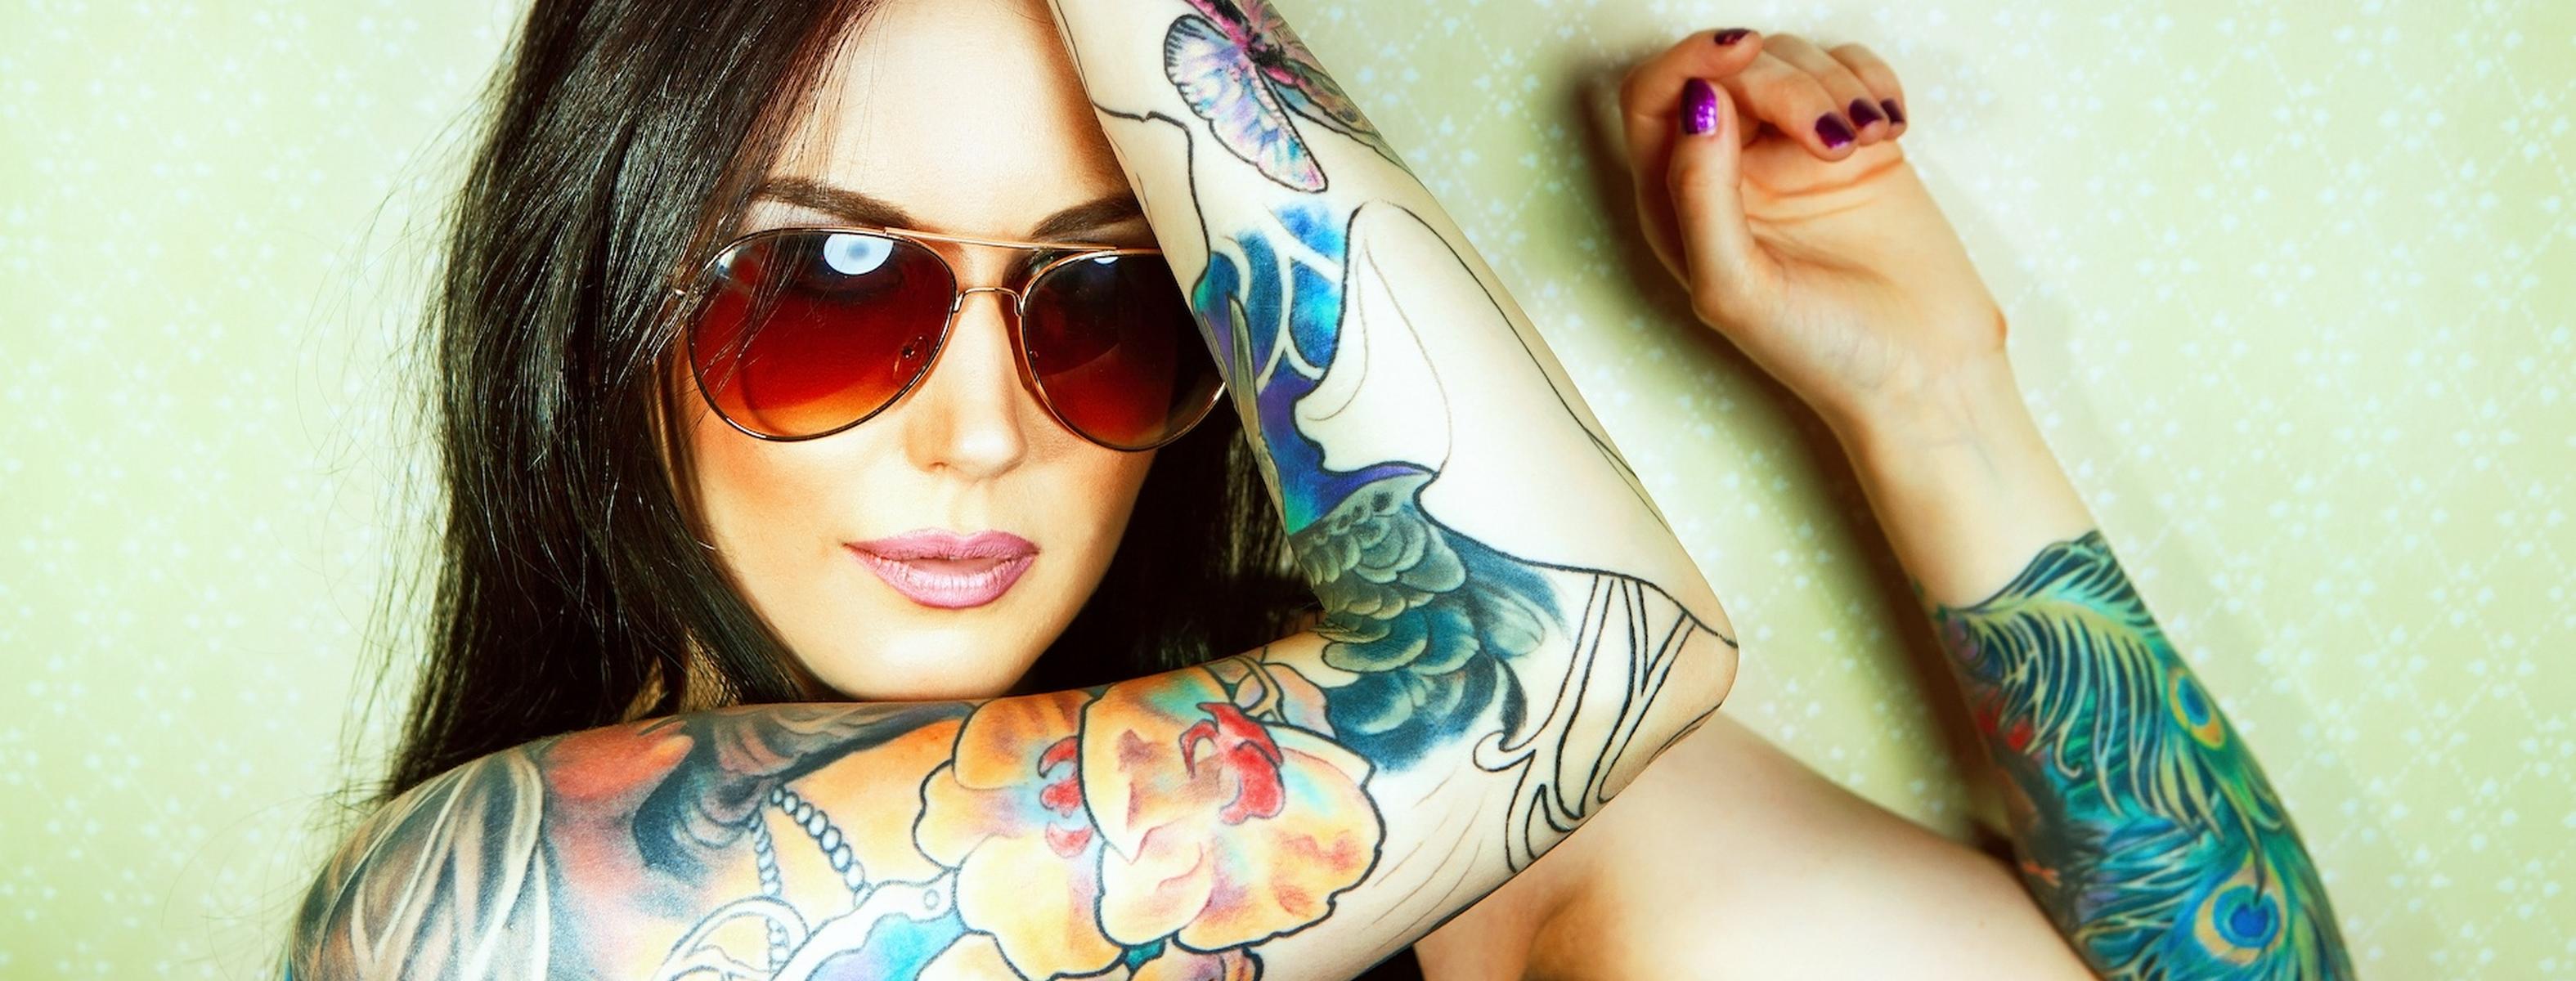 Tattoo Models | Online Portal for Alternative Modeling | go-models-cheohanoi.vn